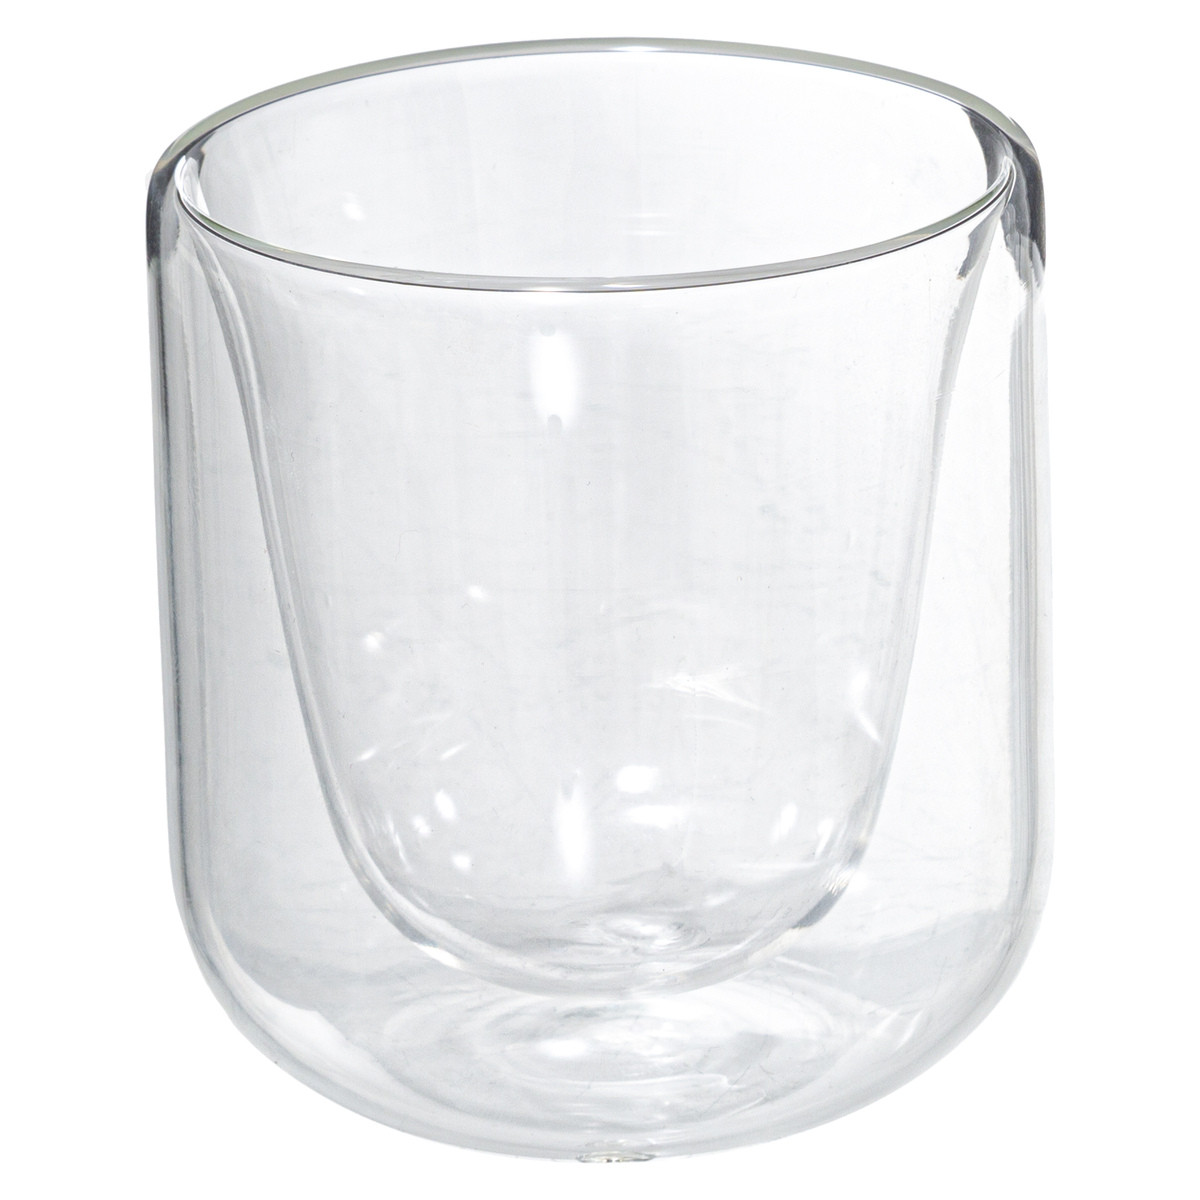 https://www.decomania.fr/729346-product_hd/tasse-en-verre-double-paroi-20-cl-clea.jpg